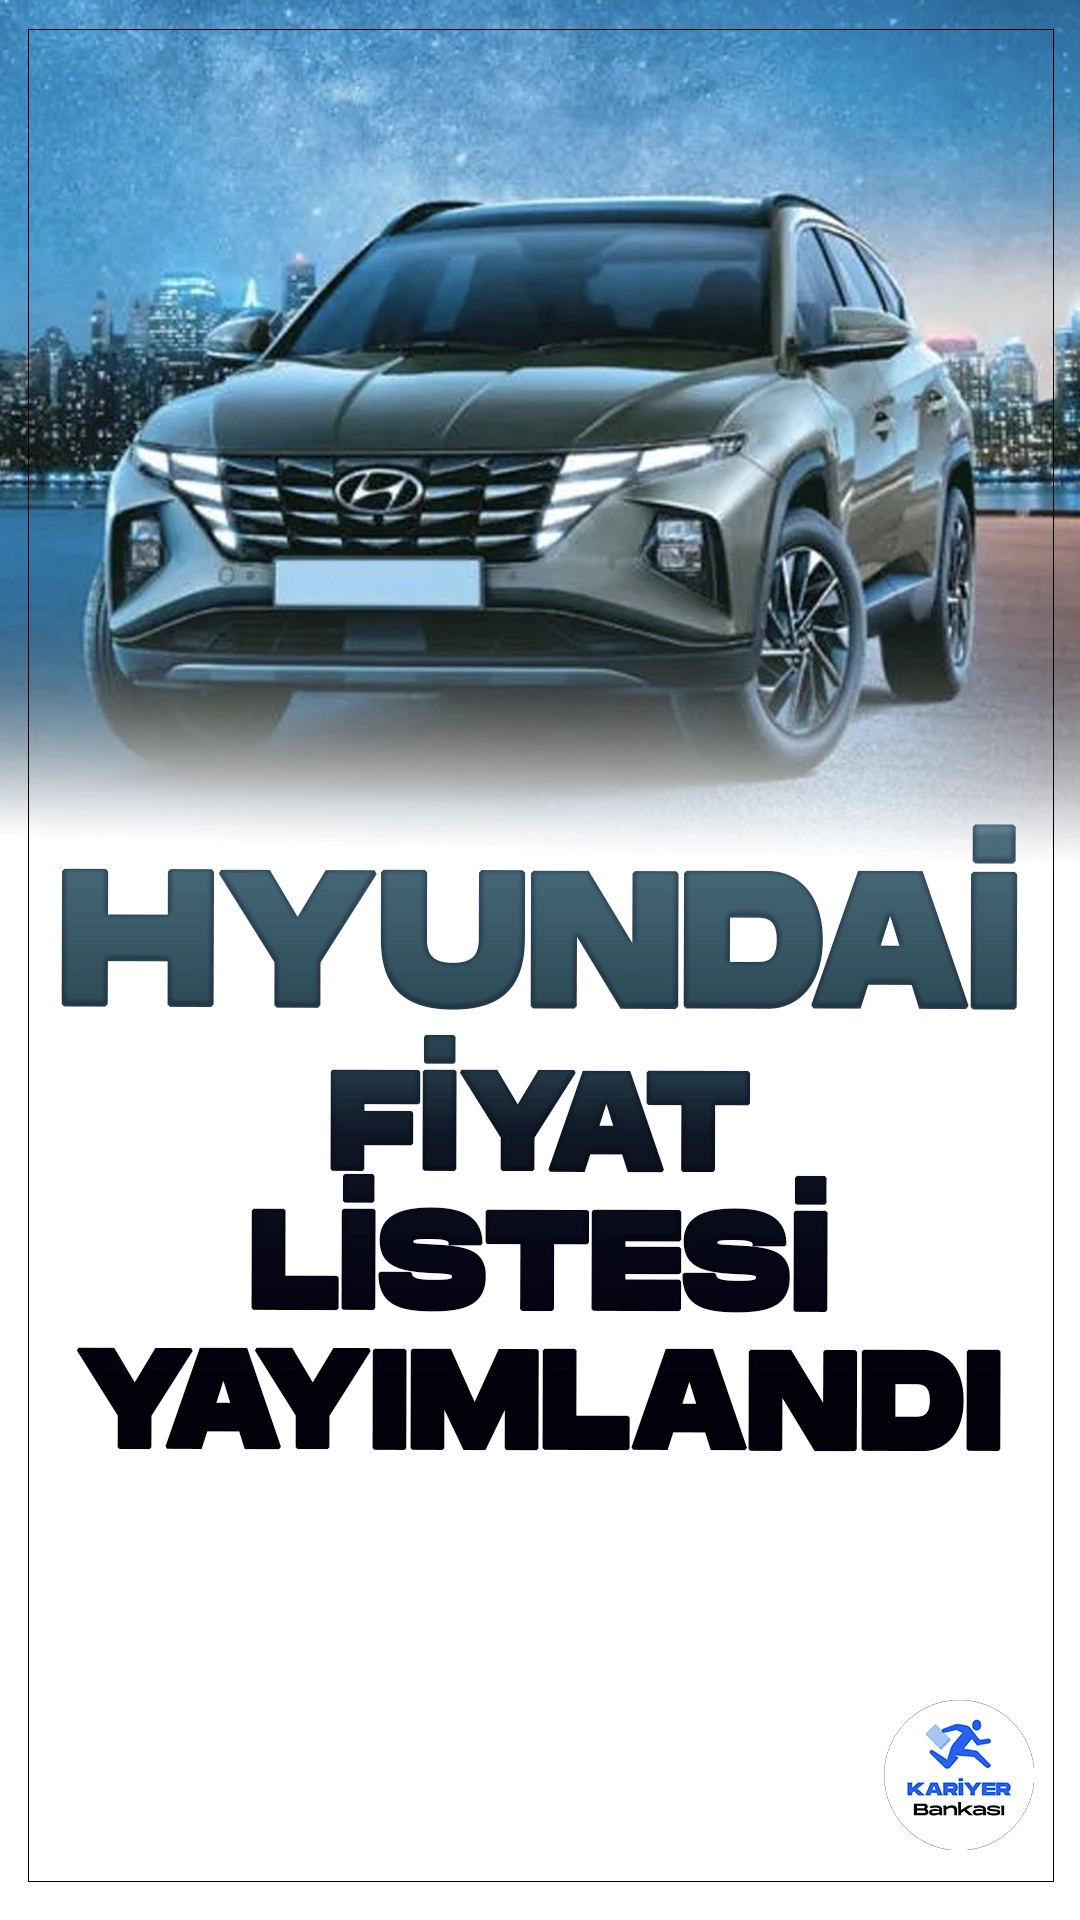 Hyundai Mayıs 2024 Fiyat Listesi Yayımlandı.Hyundai, teknoloji ve yenilikçilikteki sürekli gelişimleriyle otomotiv sektöründe önemli bir oyuncu olmaya devam ediyor. Güney Koreli üretici, geniş ve çeşitlendirilmiş araç yelpazesi ile her türlü sürücüye hitap etmeyi başarıyor. Hyundai'nin ürün gamı, küçük şehir otomobillerinden lüks SUV'lara, hibrit modellerden tam elektrikli araçlara kadar uzanıyor. Bu yazıda Hyundai'nin popüler modellerinden bazılarına daha yakından bakacağız.